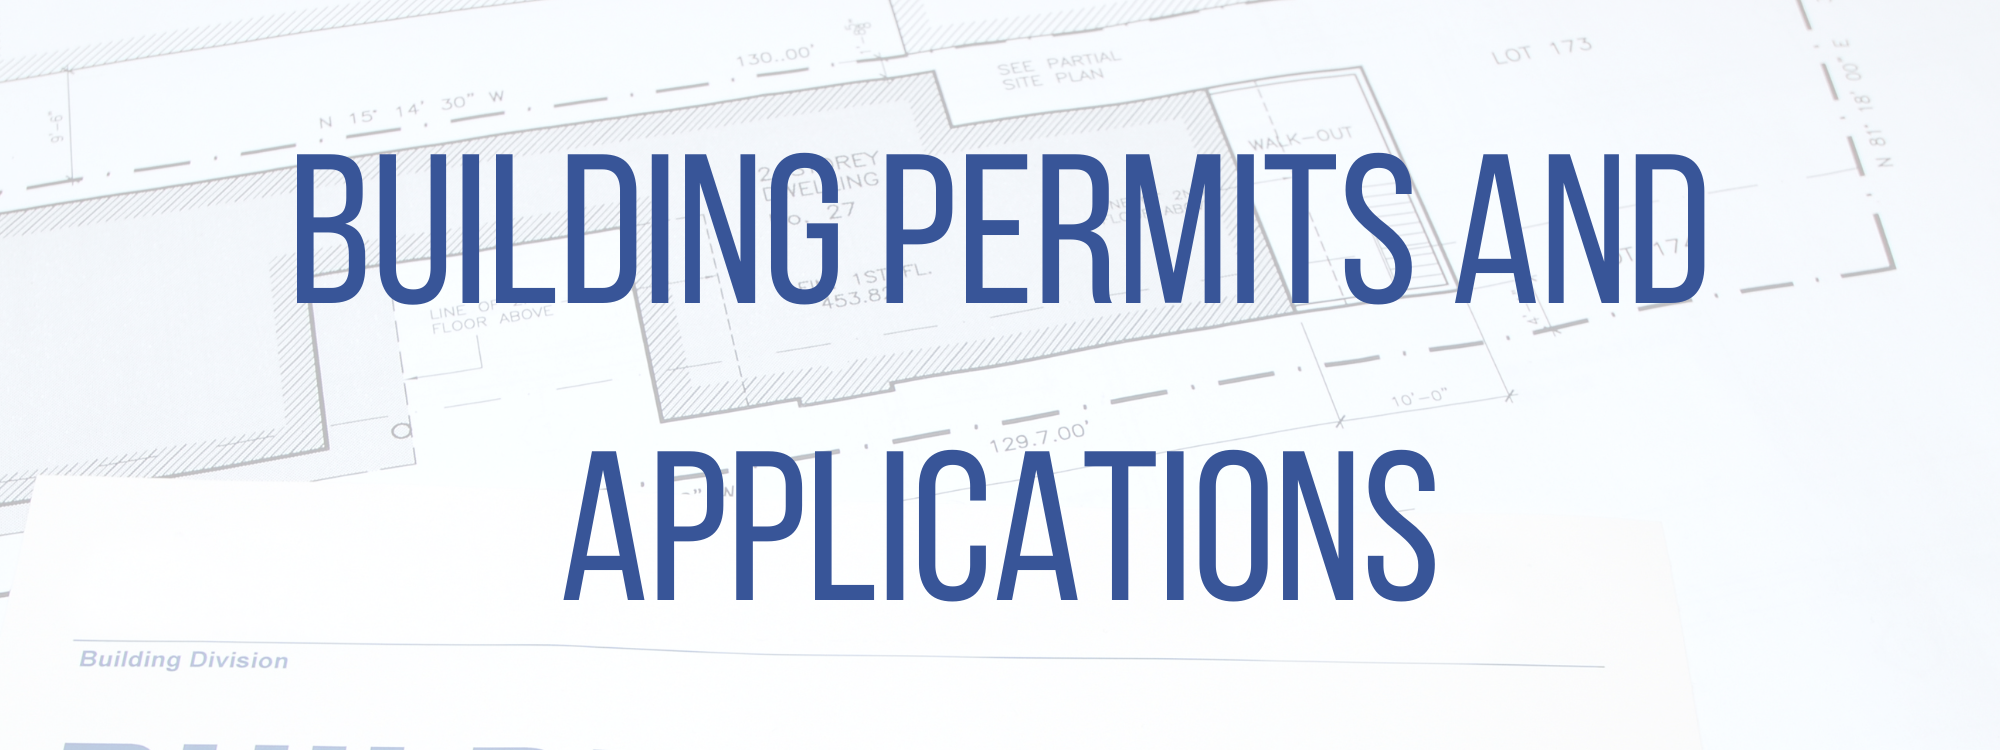 Building Permits & Applications